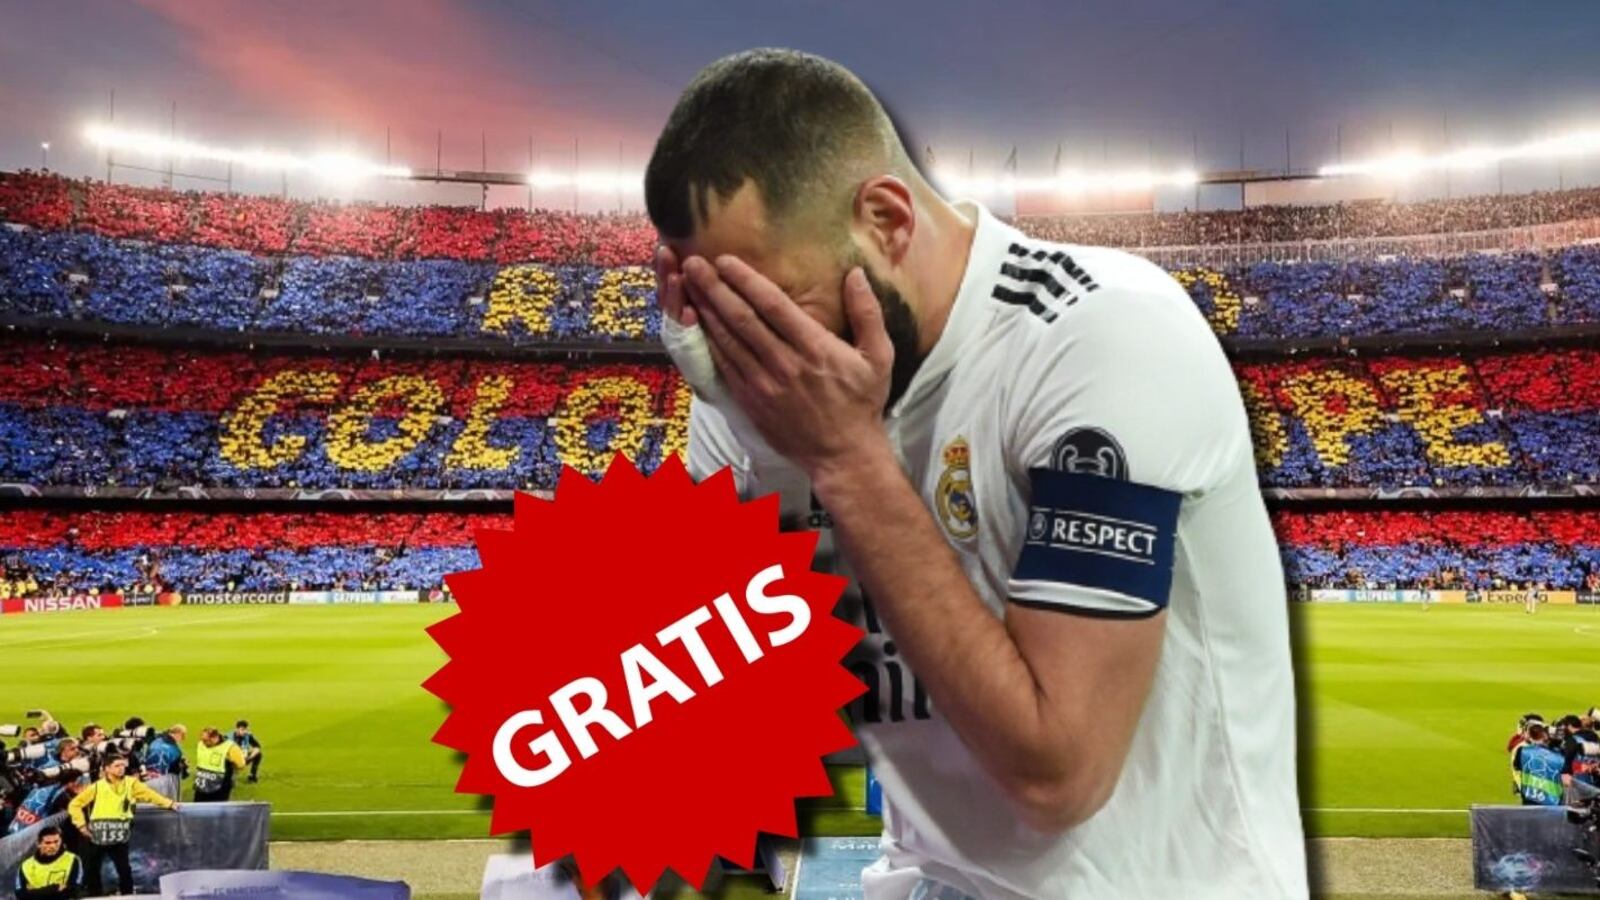 El Madrid lo quiso y pidieron 120 millones, ahora podría llegar gratis al Barça